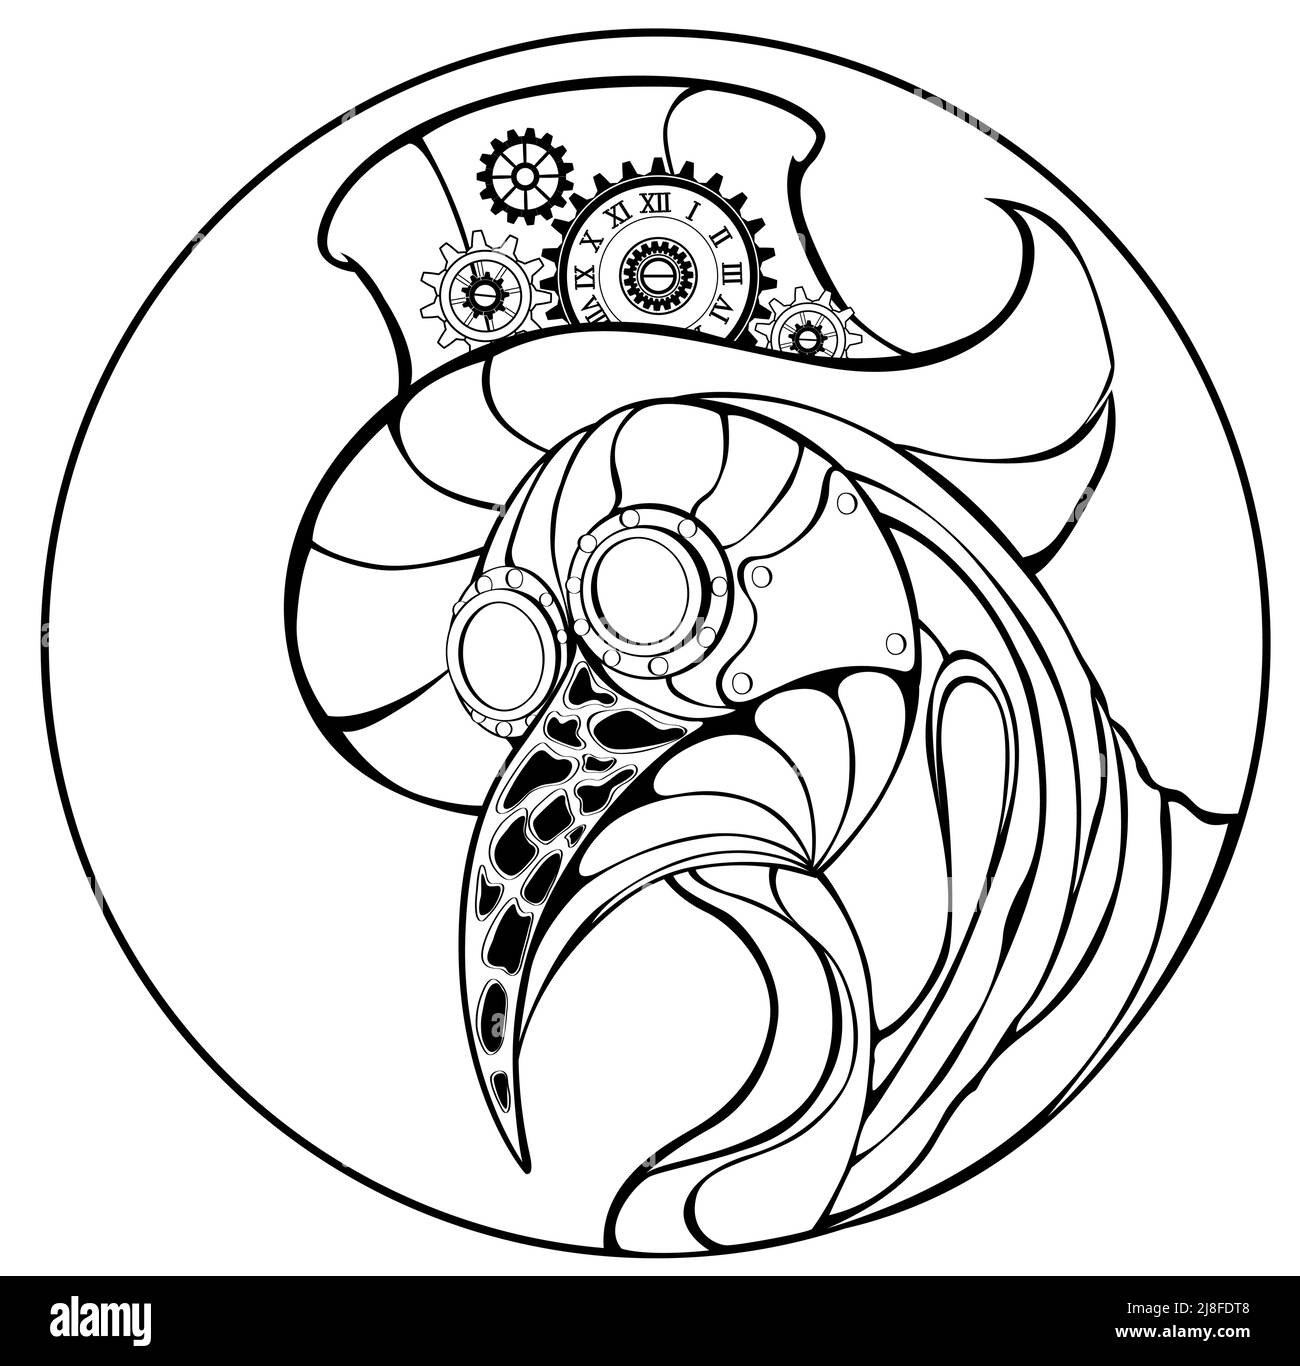 Artistiquement peint médecin de la peste dans chapeau haut chapeau décoré avec des engrenages de contour et horloge antique sur fond blanc. Style steampunk. Illustration de Vecteur